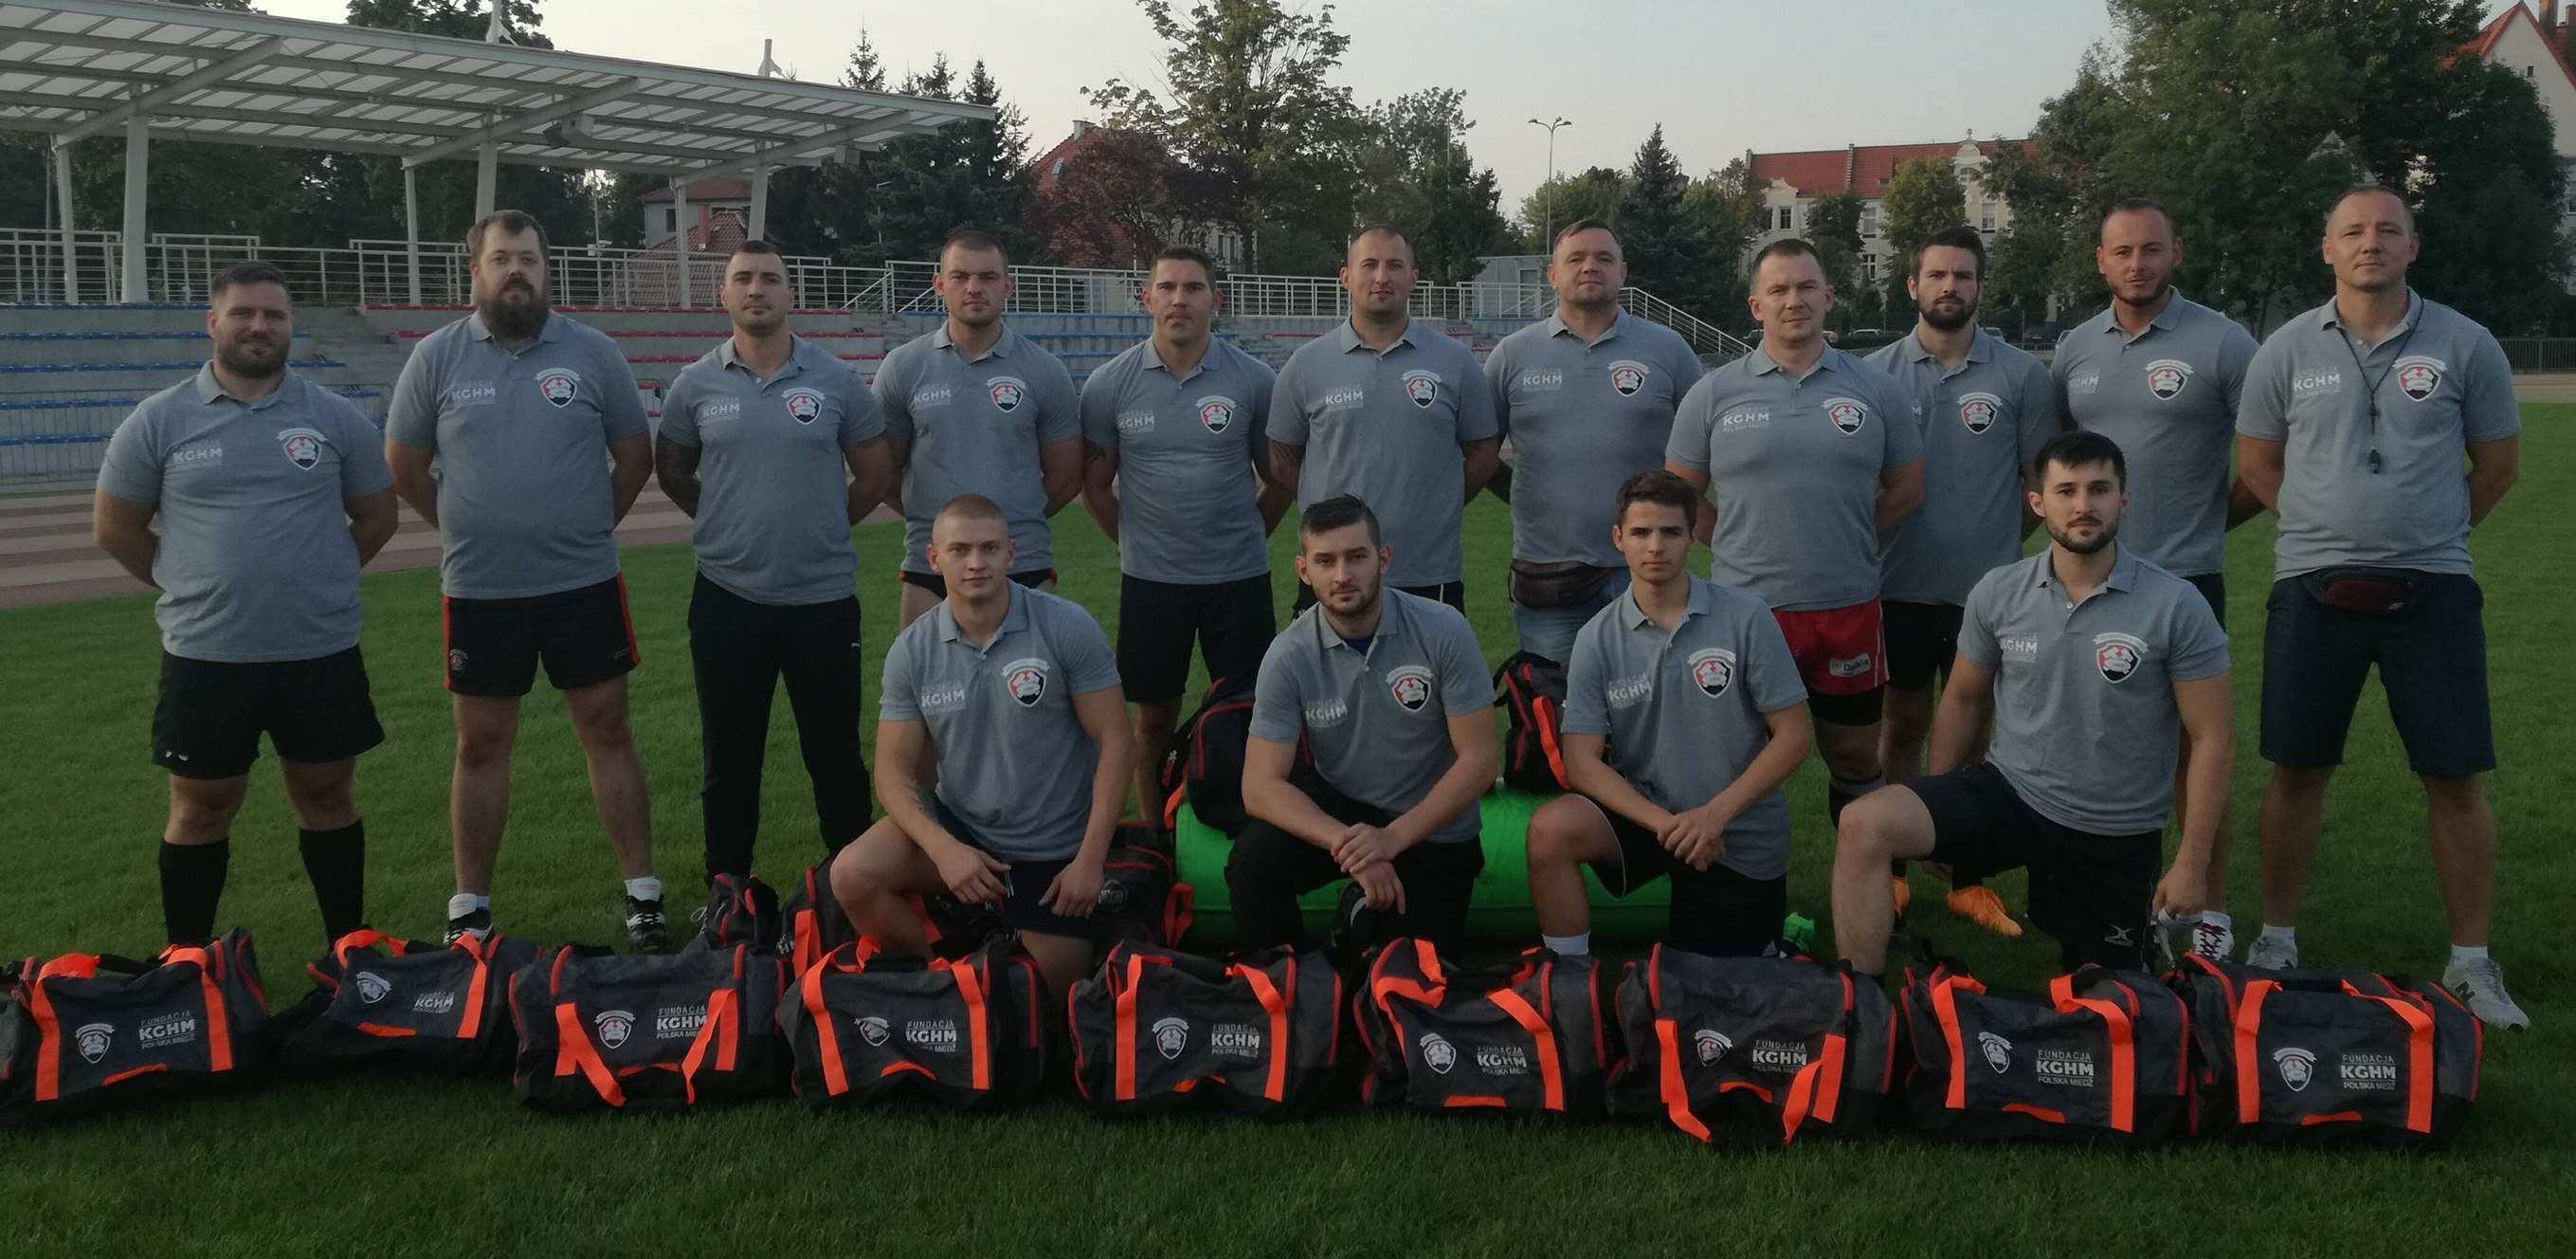 Lubińscy Rugbyści poznali terminarz rozgrywek